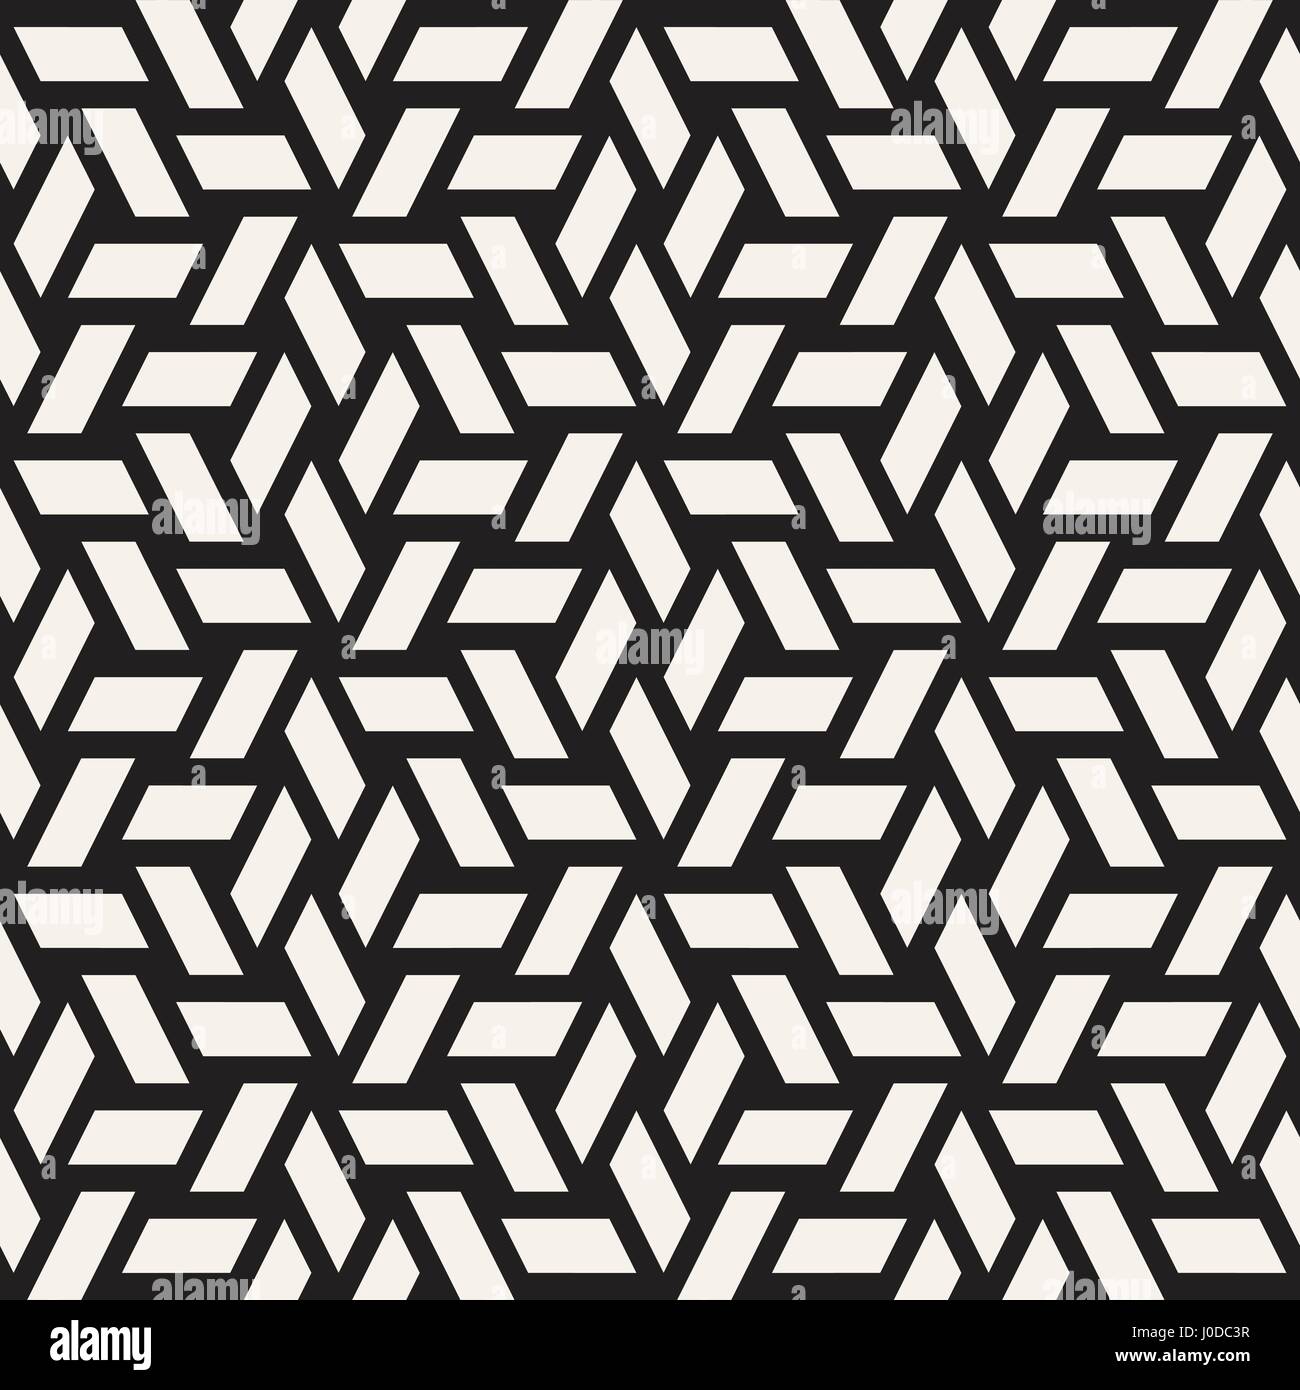 Grille de cubes carrelage élégant sans fin de texture. La conception d'arrière-plan géométrique abstraite. Seamless Vector motif en noir et blanc. Illustration de Vecteur